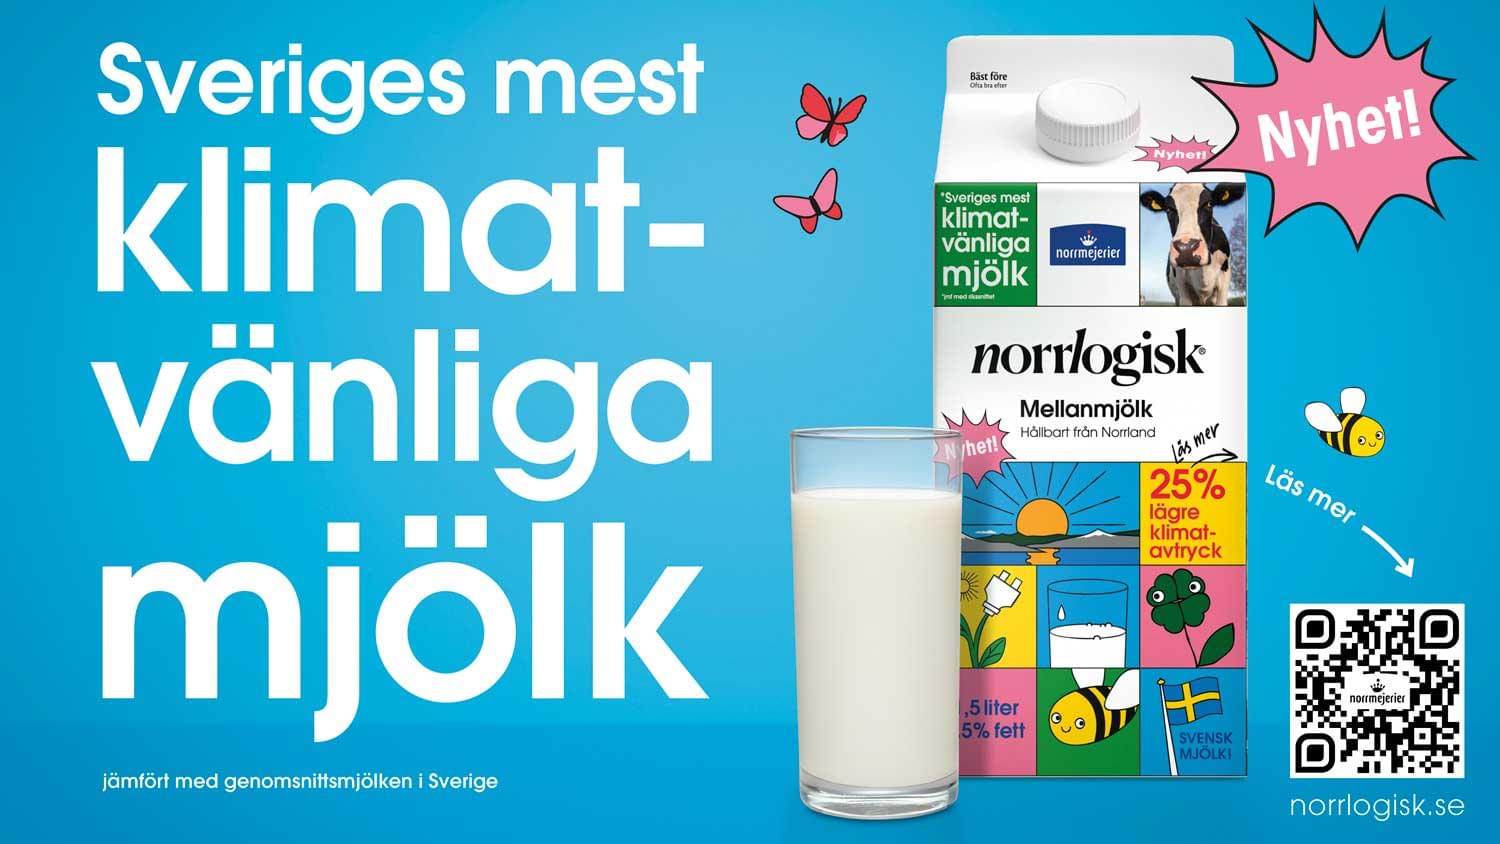 Framtidens mjölk är här: Norrlogisk - Mjölk med 25% lägre klimatpåverkan*